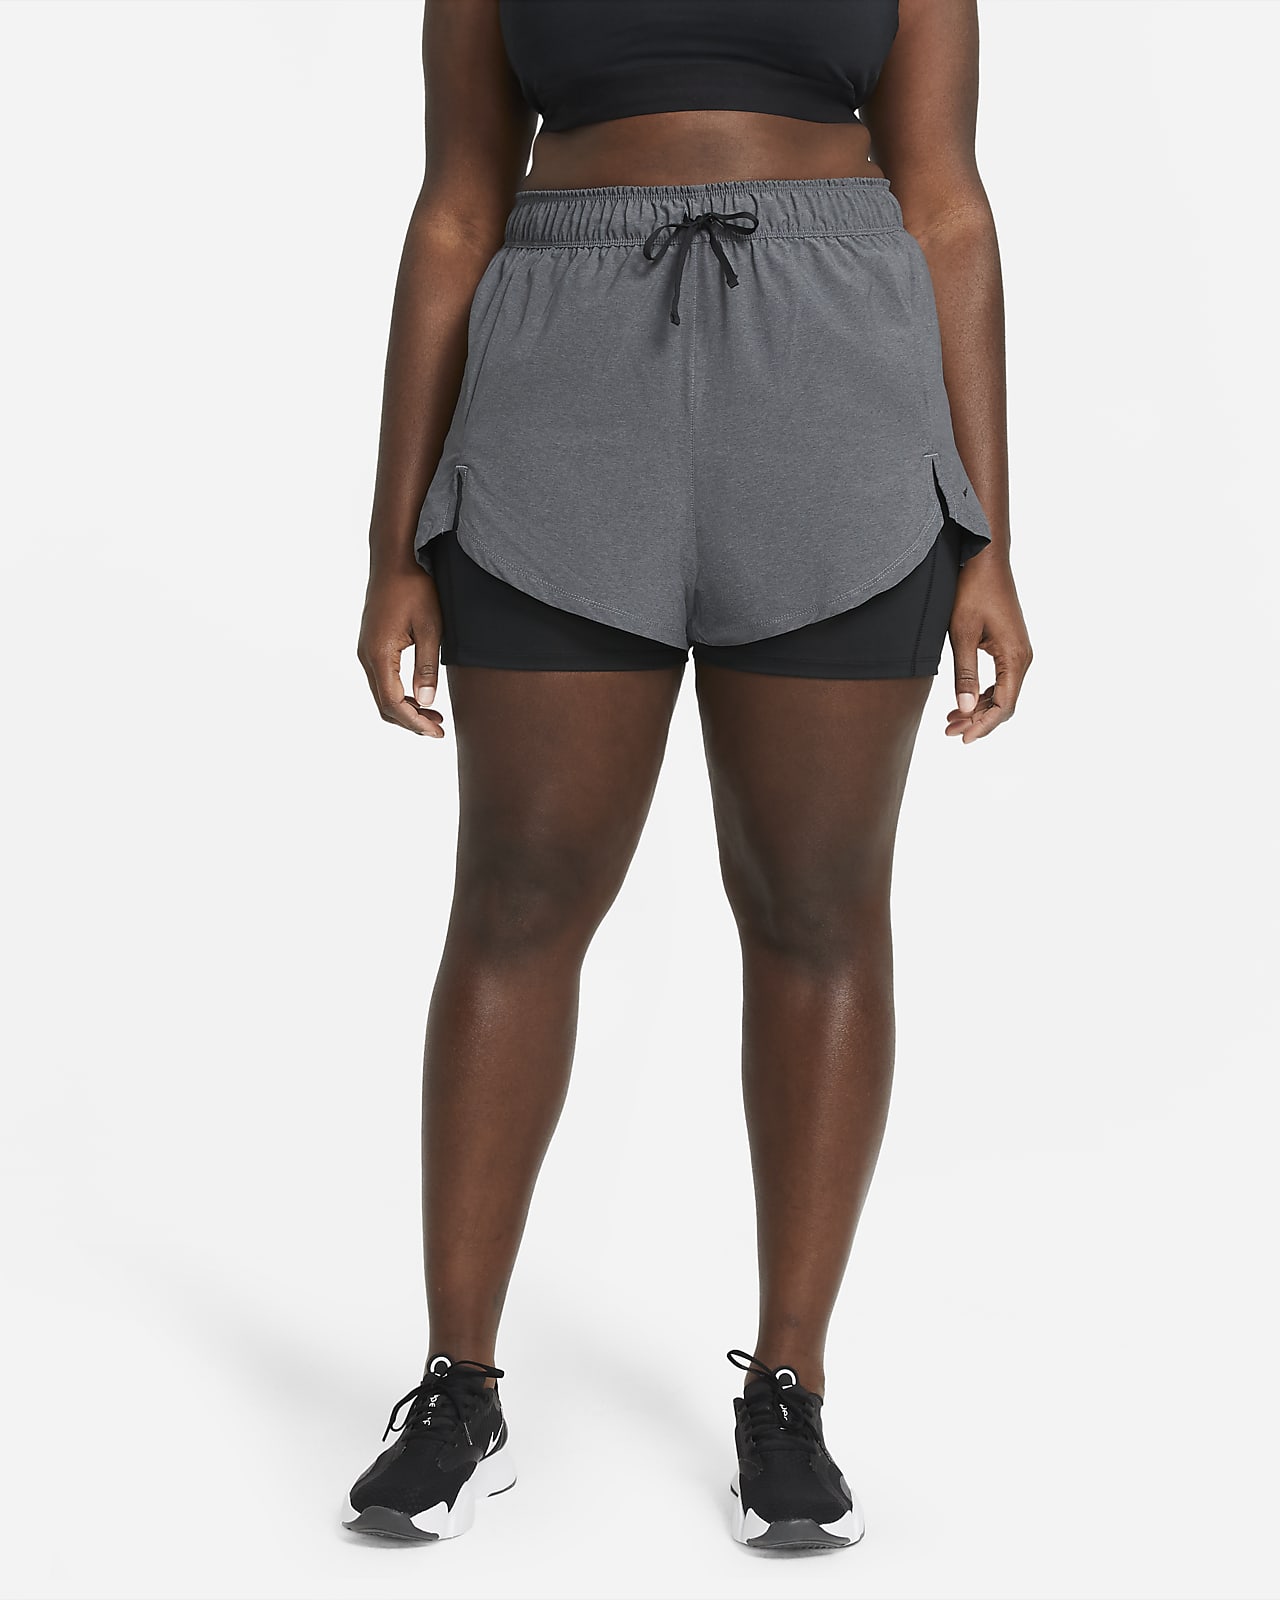 Nike Women's Flex 2 In 1 Shorts